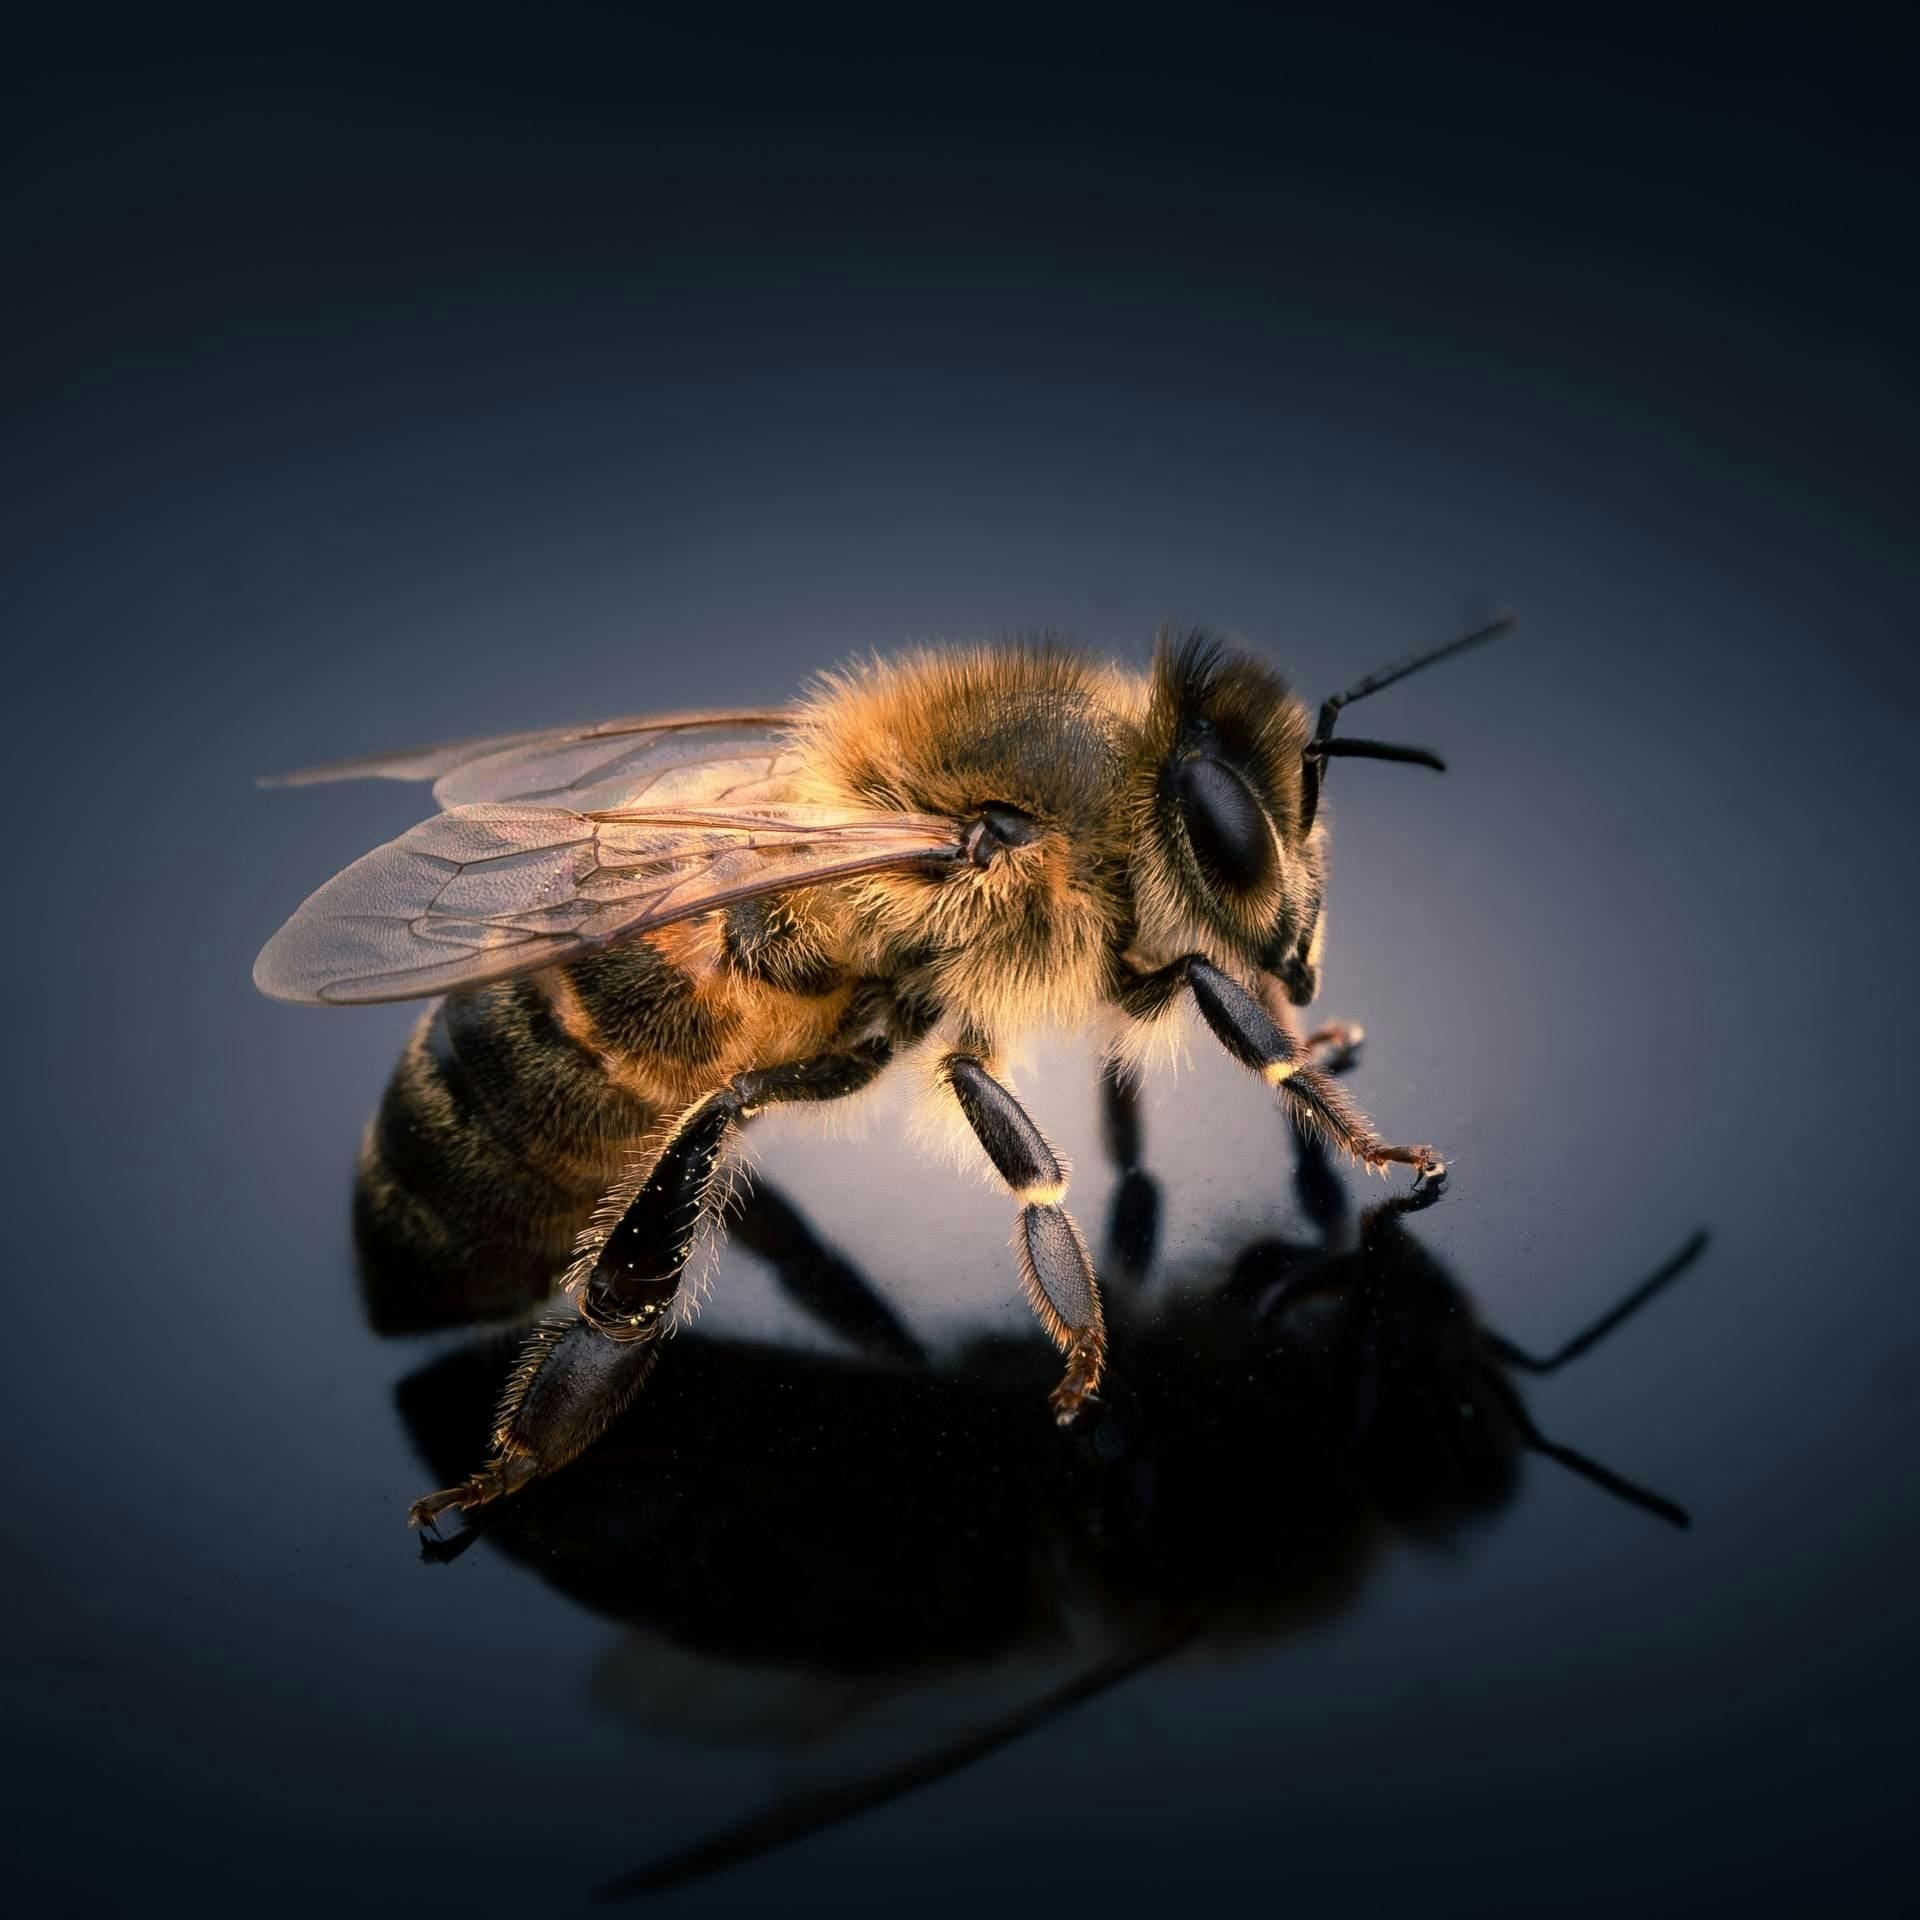 Bilde av bie for å illustrere hvordan de navigerer. 